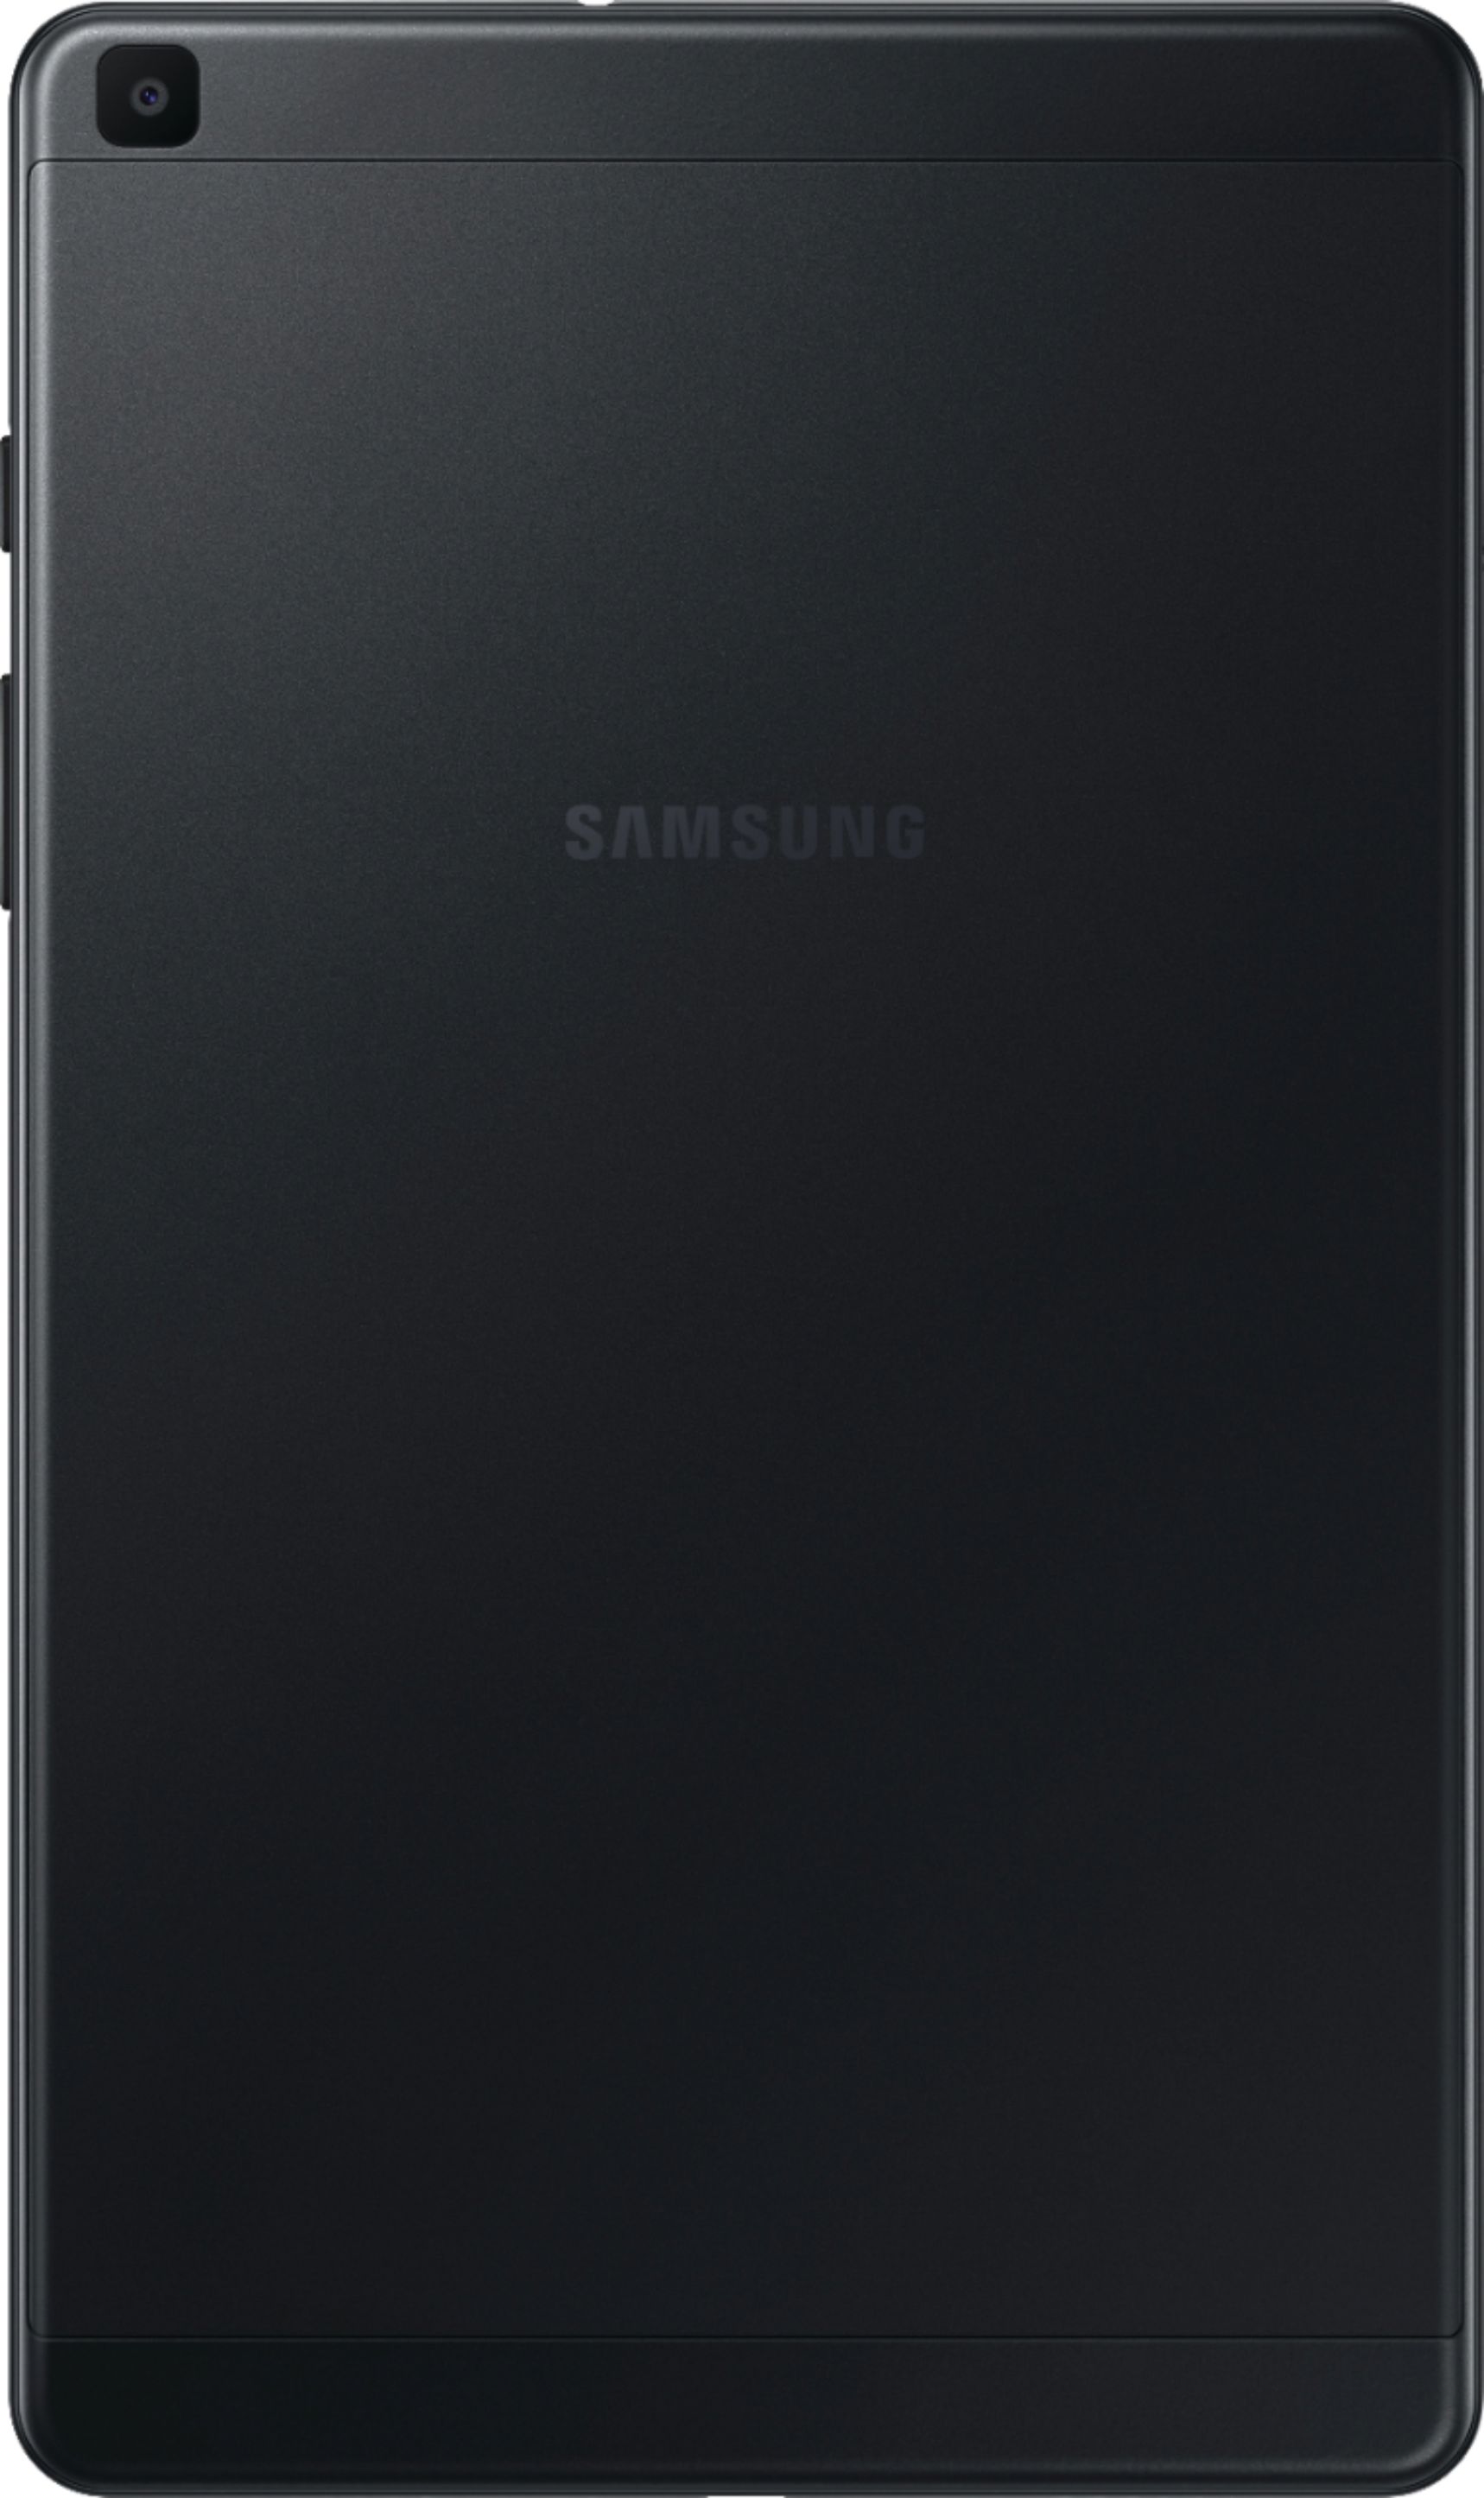 Samsung Galaxy Tab A (2019) 8